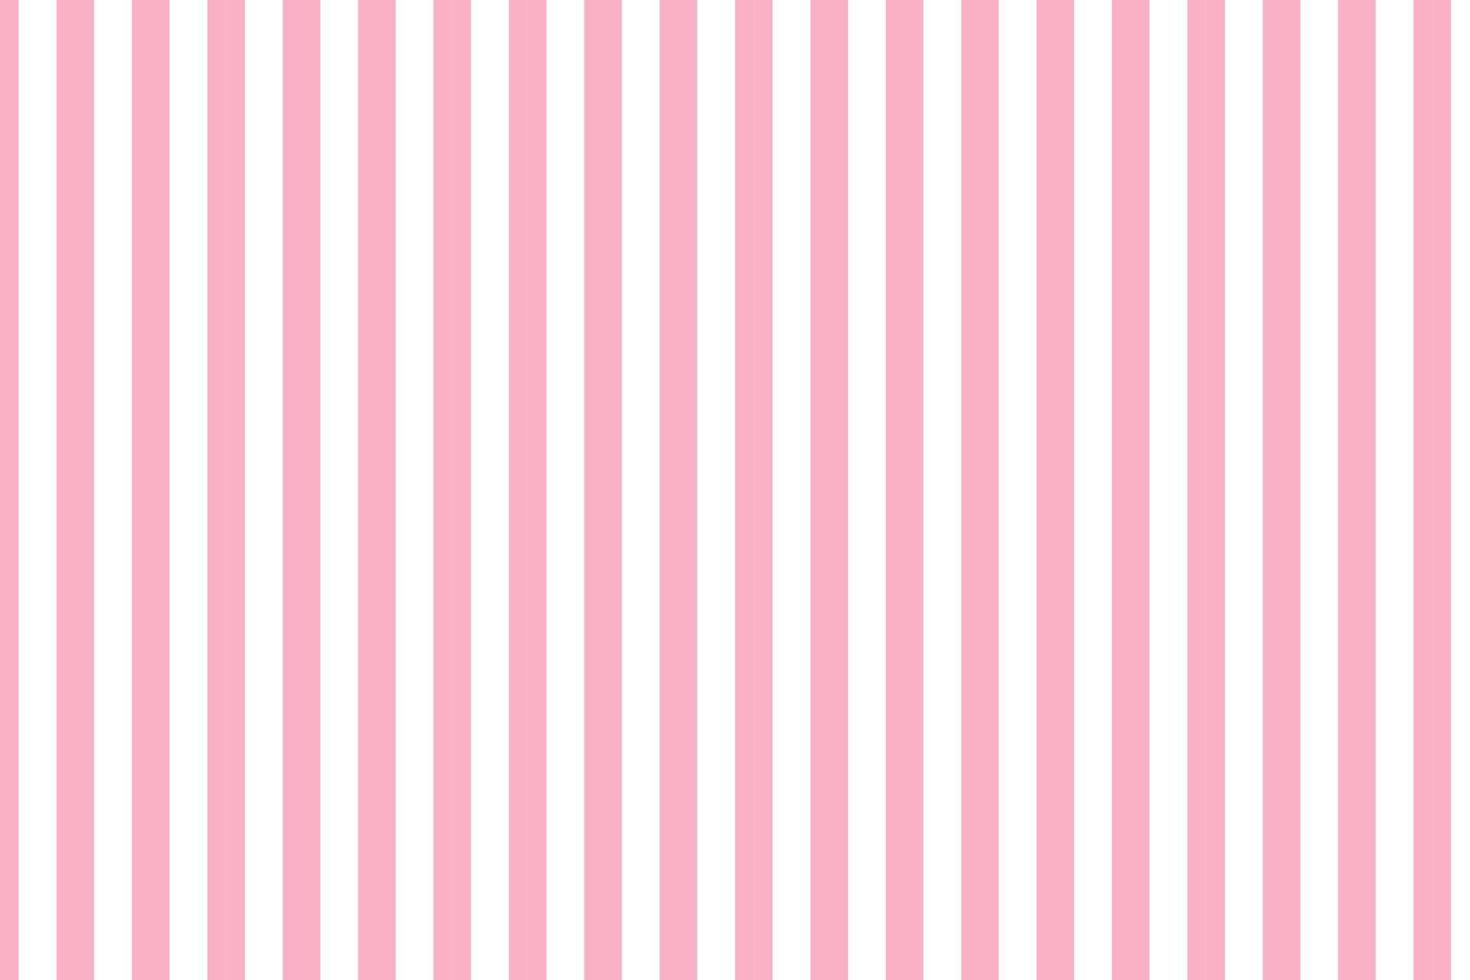 Fondos Rosa Y Blanco fondo de rayas rosa y blanco 13106368 Vector en Vecteezy